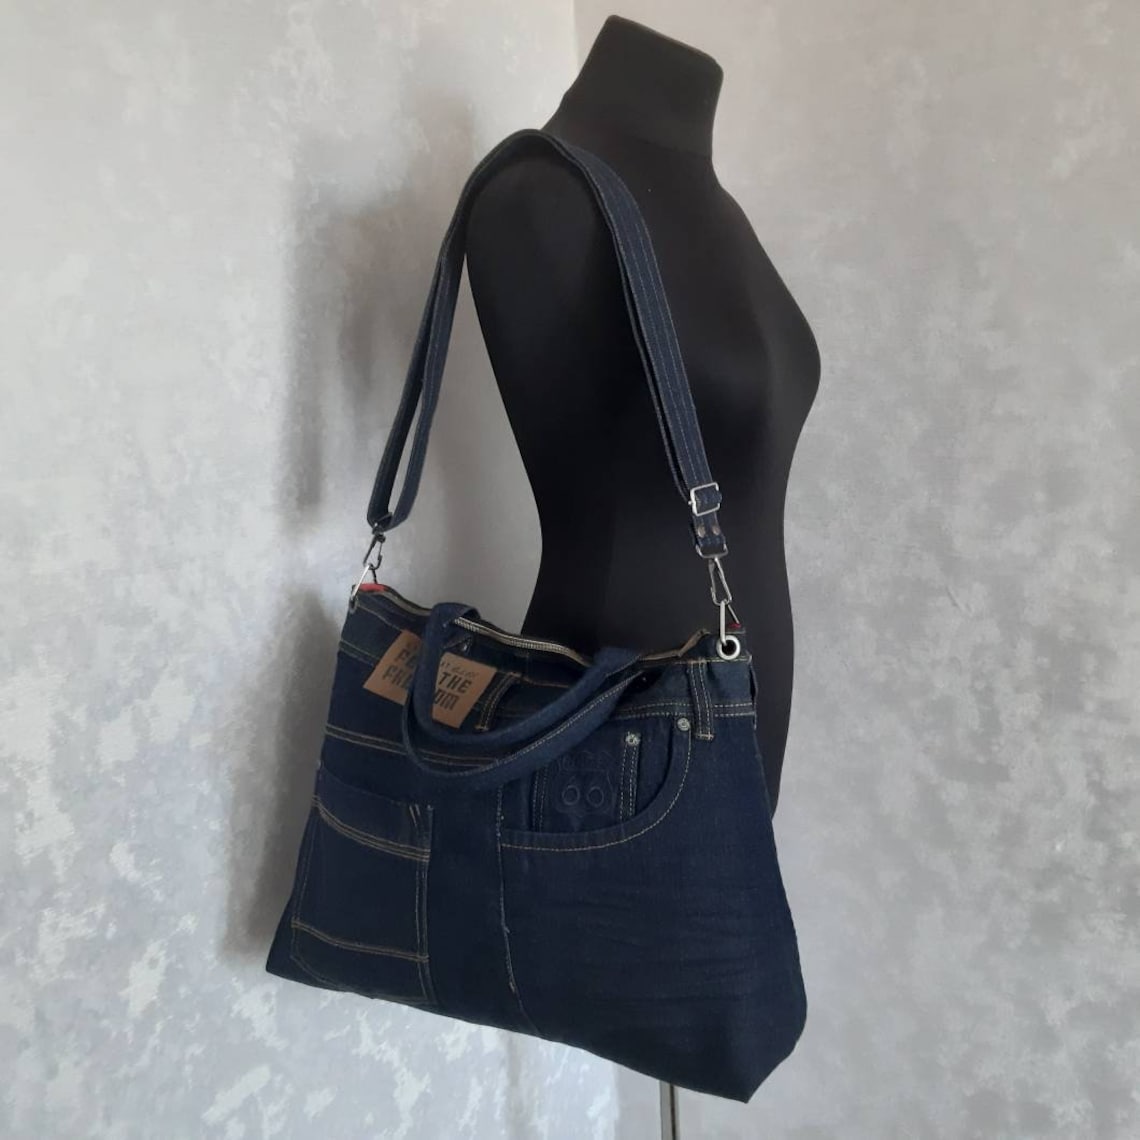 Hobo denim bag Jean shoulder bag Casual handbag of jeans | Etsy